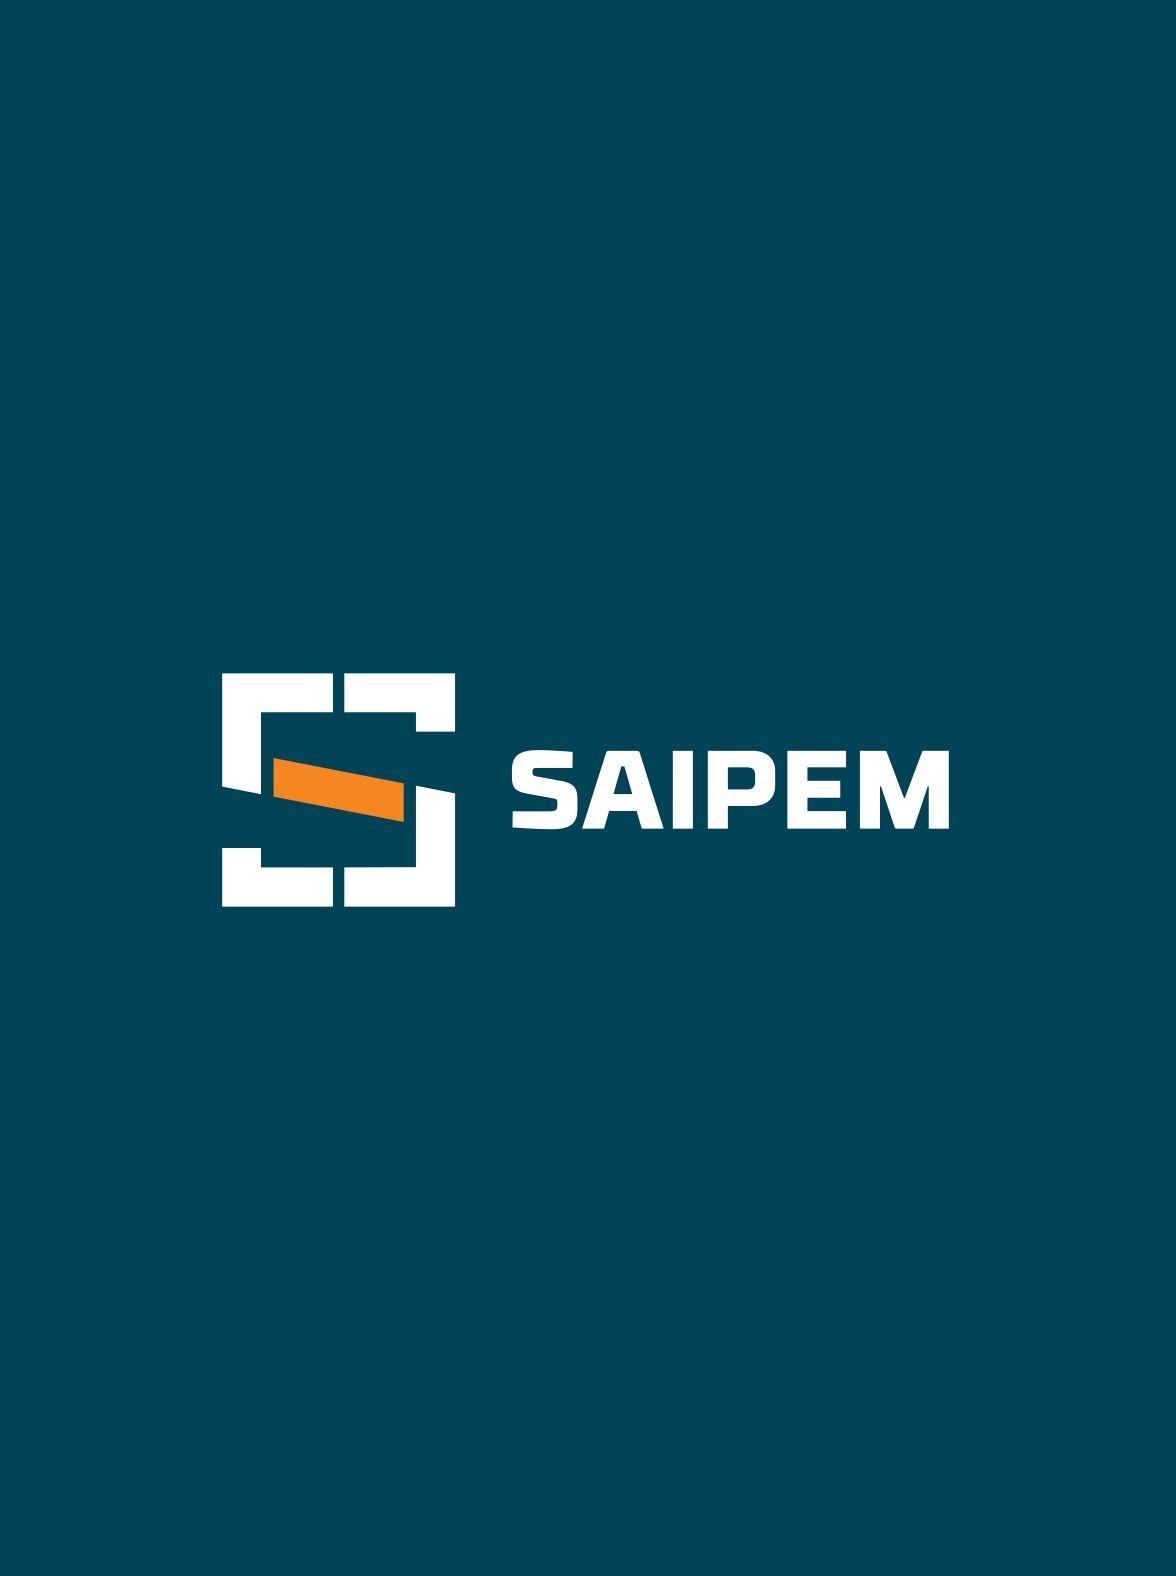 Saipem Logo - History